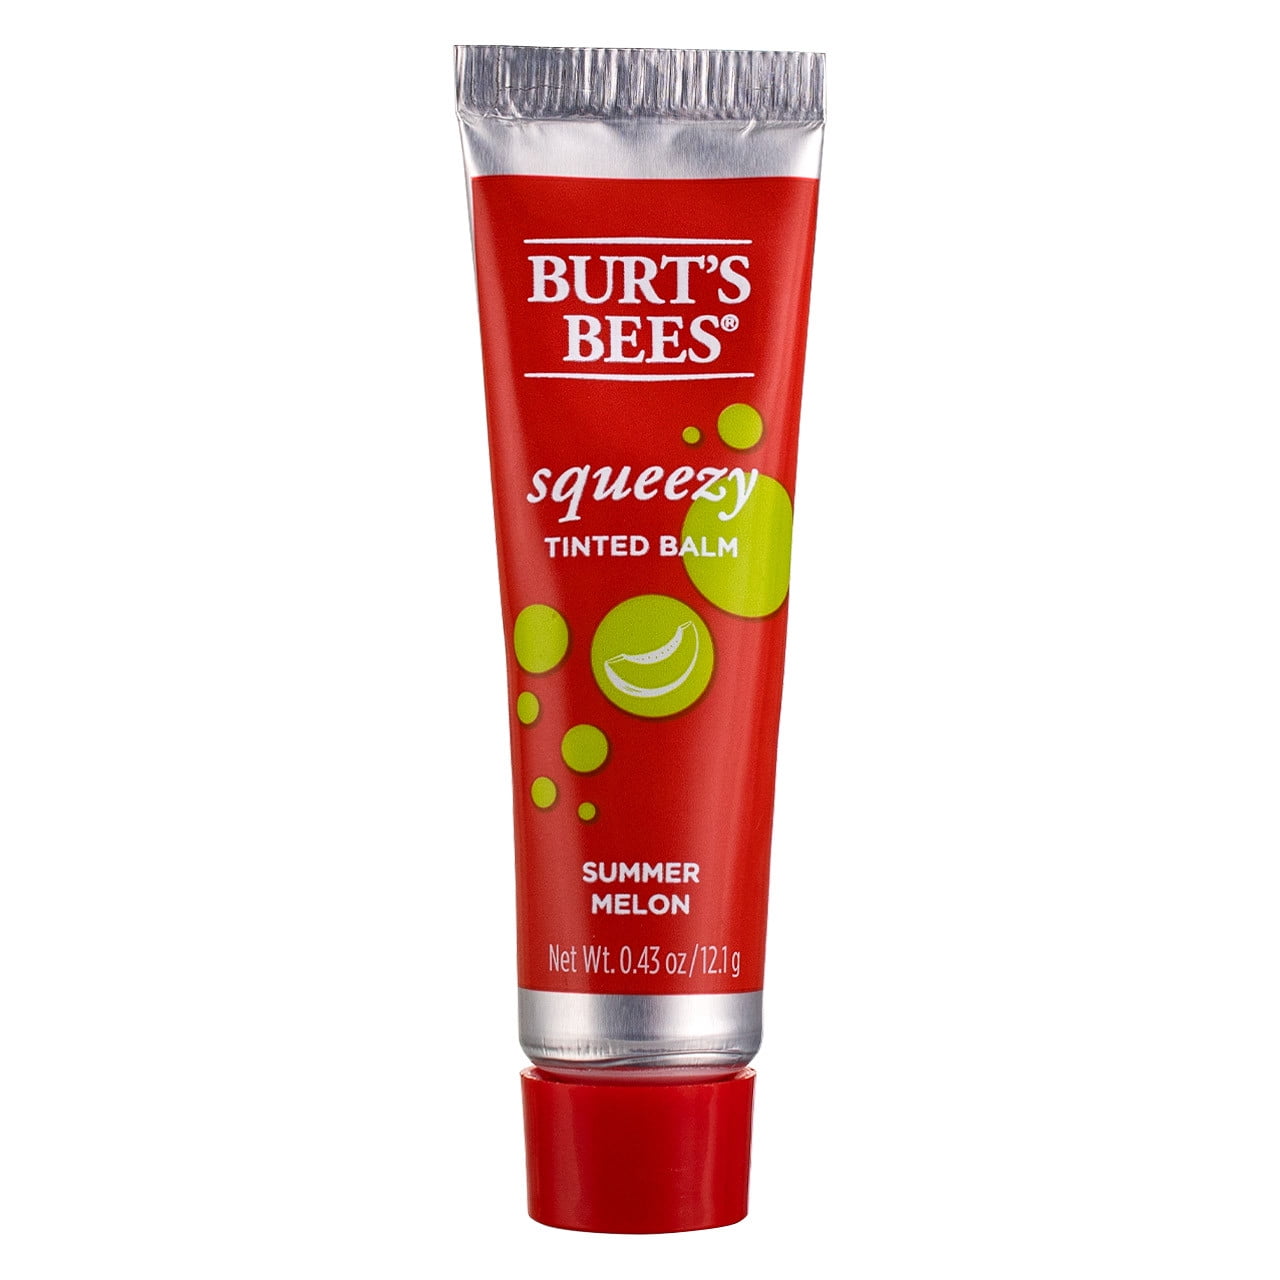 Buy Burts Bees Lip balm in Saudi, UAE, Kuwait and Qatar